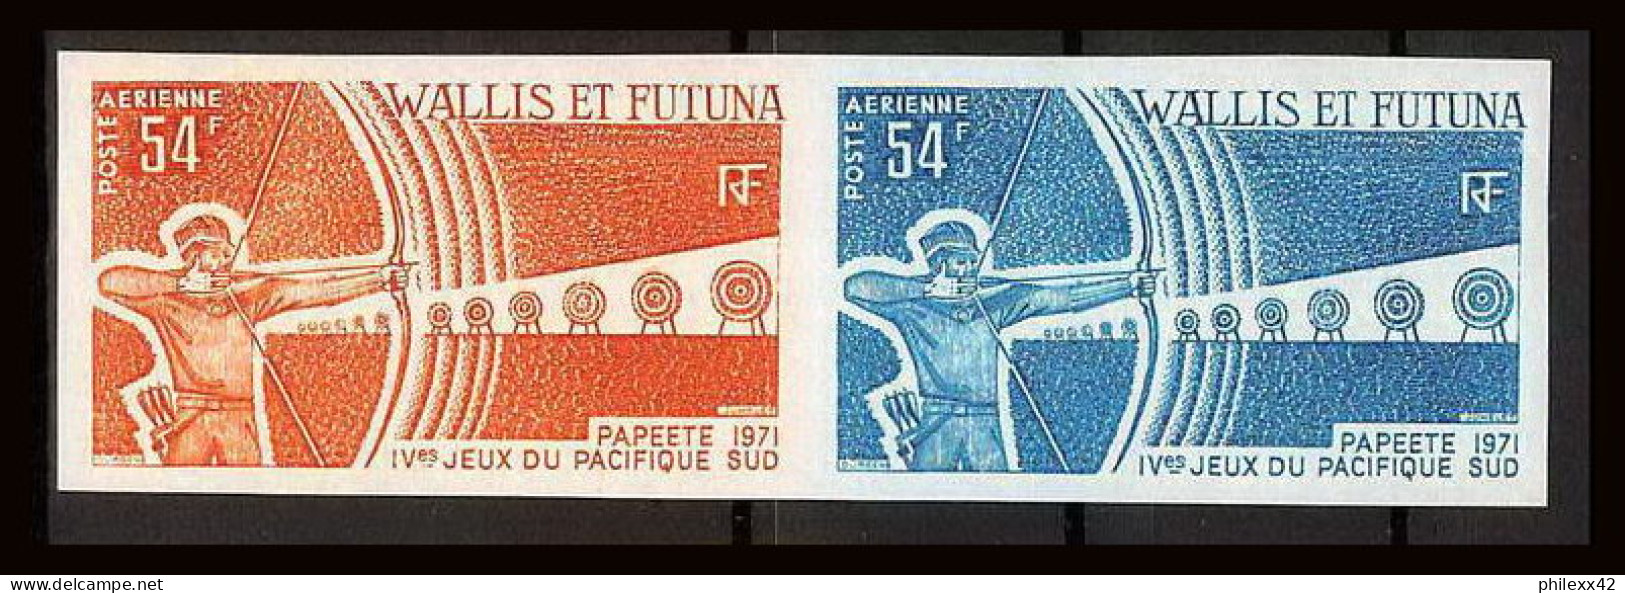 92552b Wallis Et Futuna PA N°40 Tir à L'arc Archery Jeux Du Pacific 1971 Paire Essais Proof Non Dentelé Imperf ** MNH  - Archery